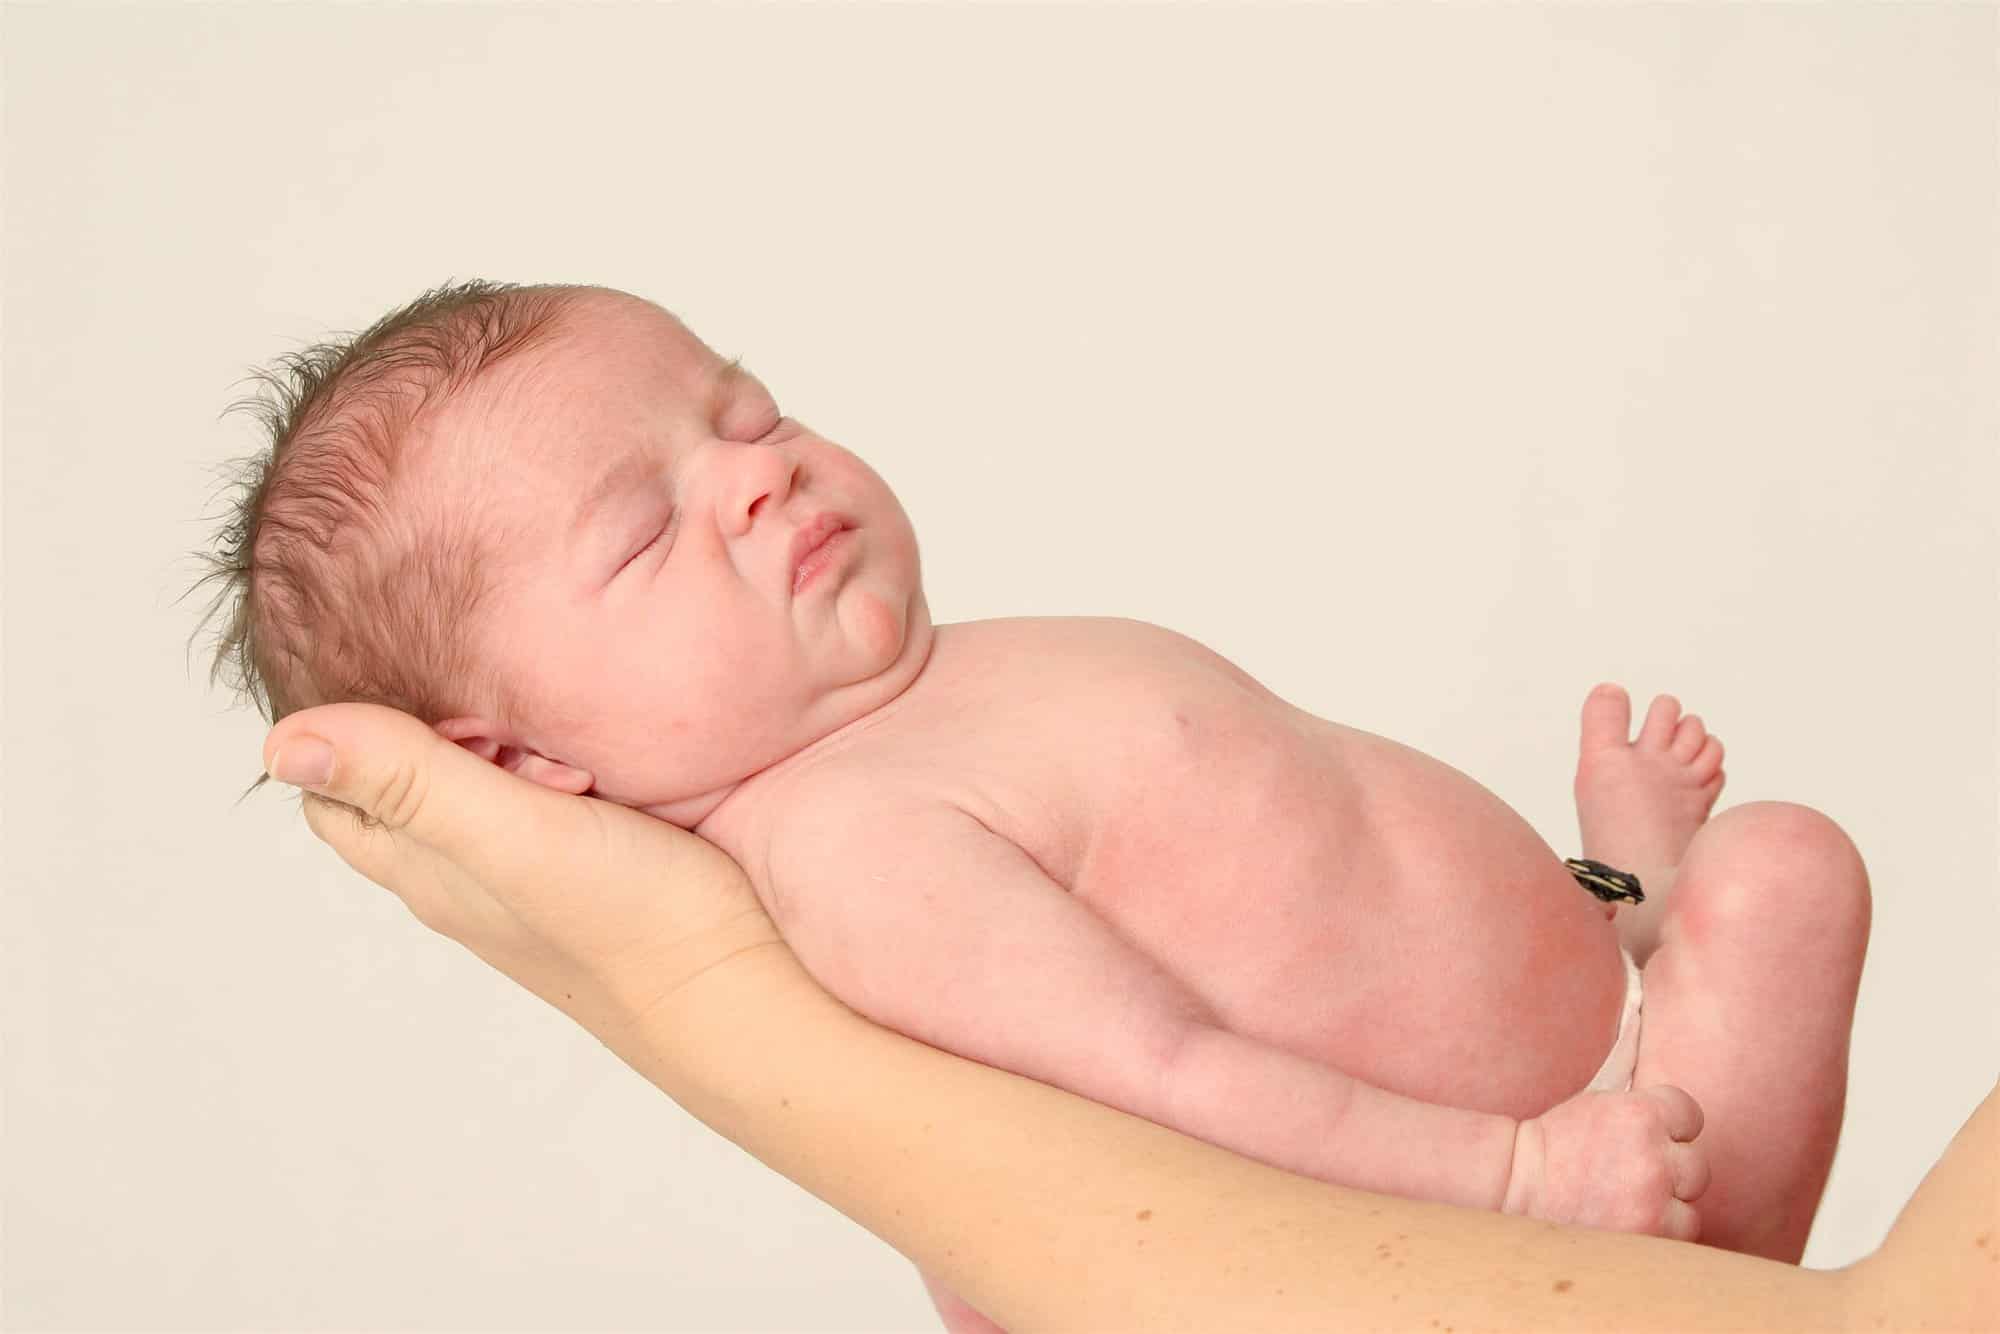 Cómo manejar recién nacido - Criar con Sentido Común